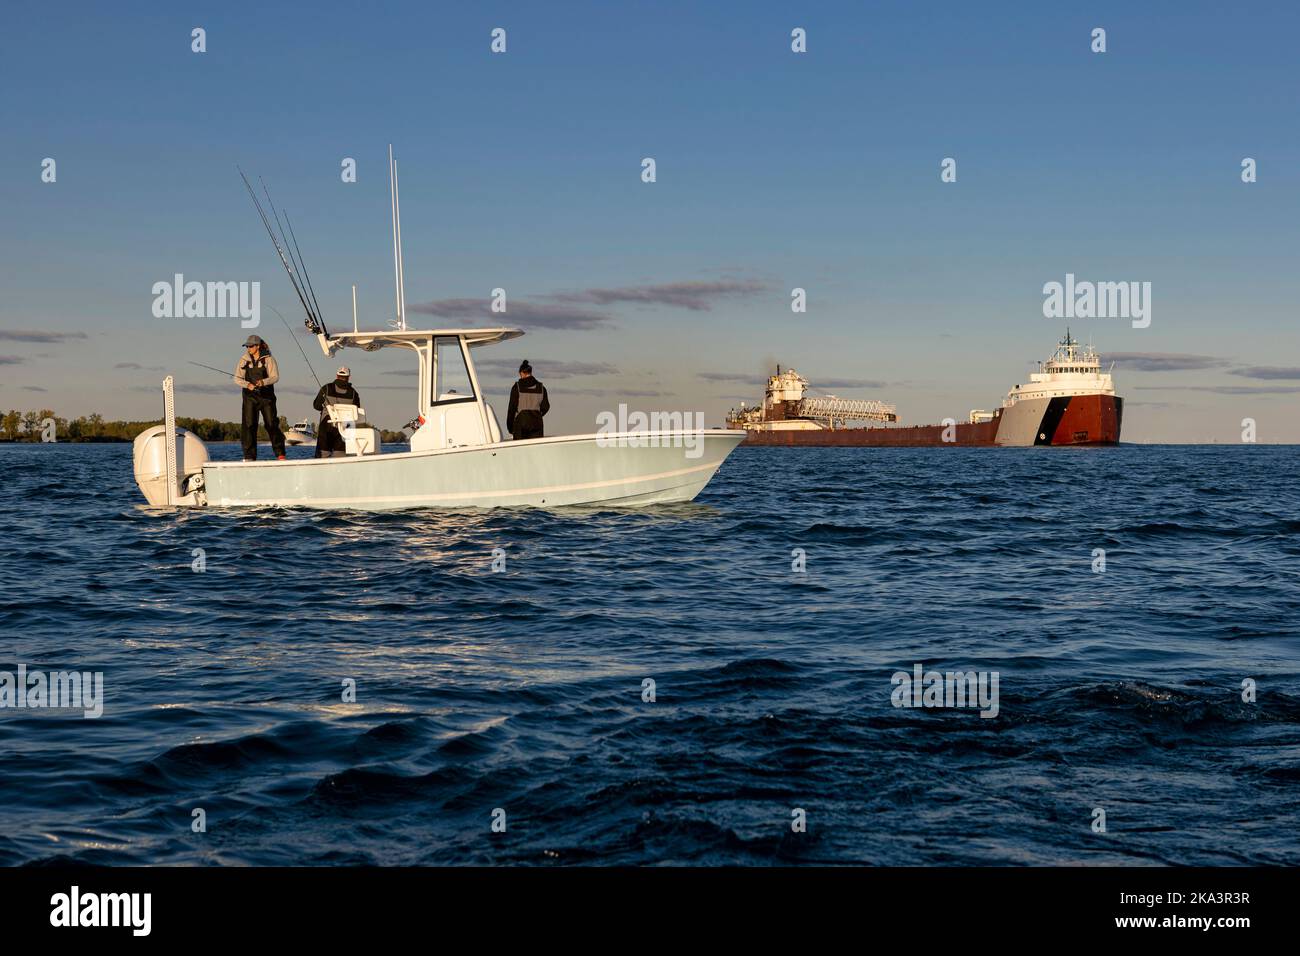 Persone che pescano su una barca con una grande nave sullo sfondo. Foto Stock